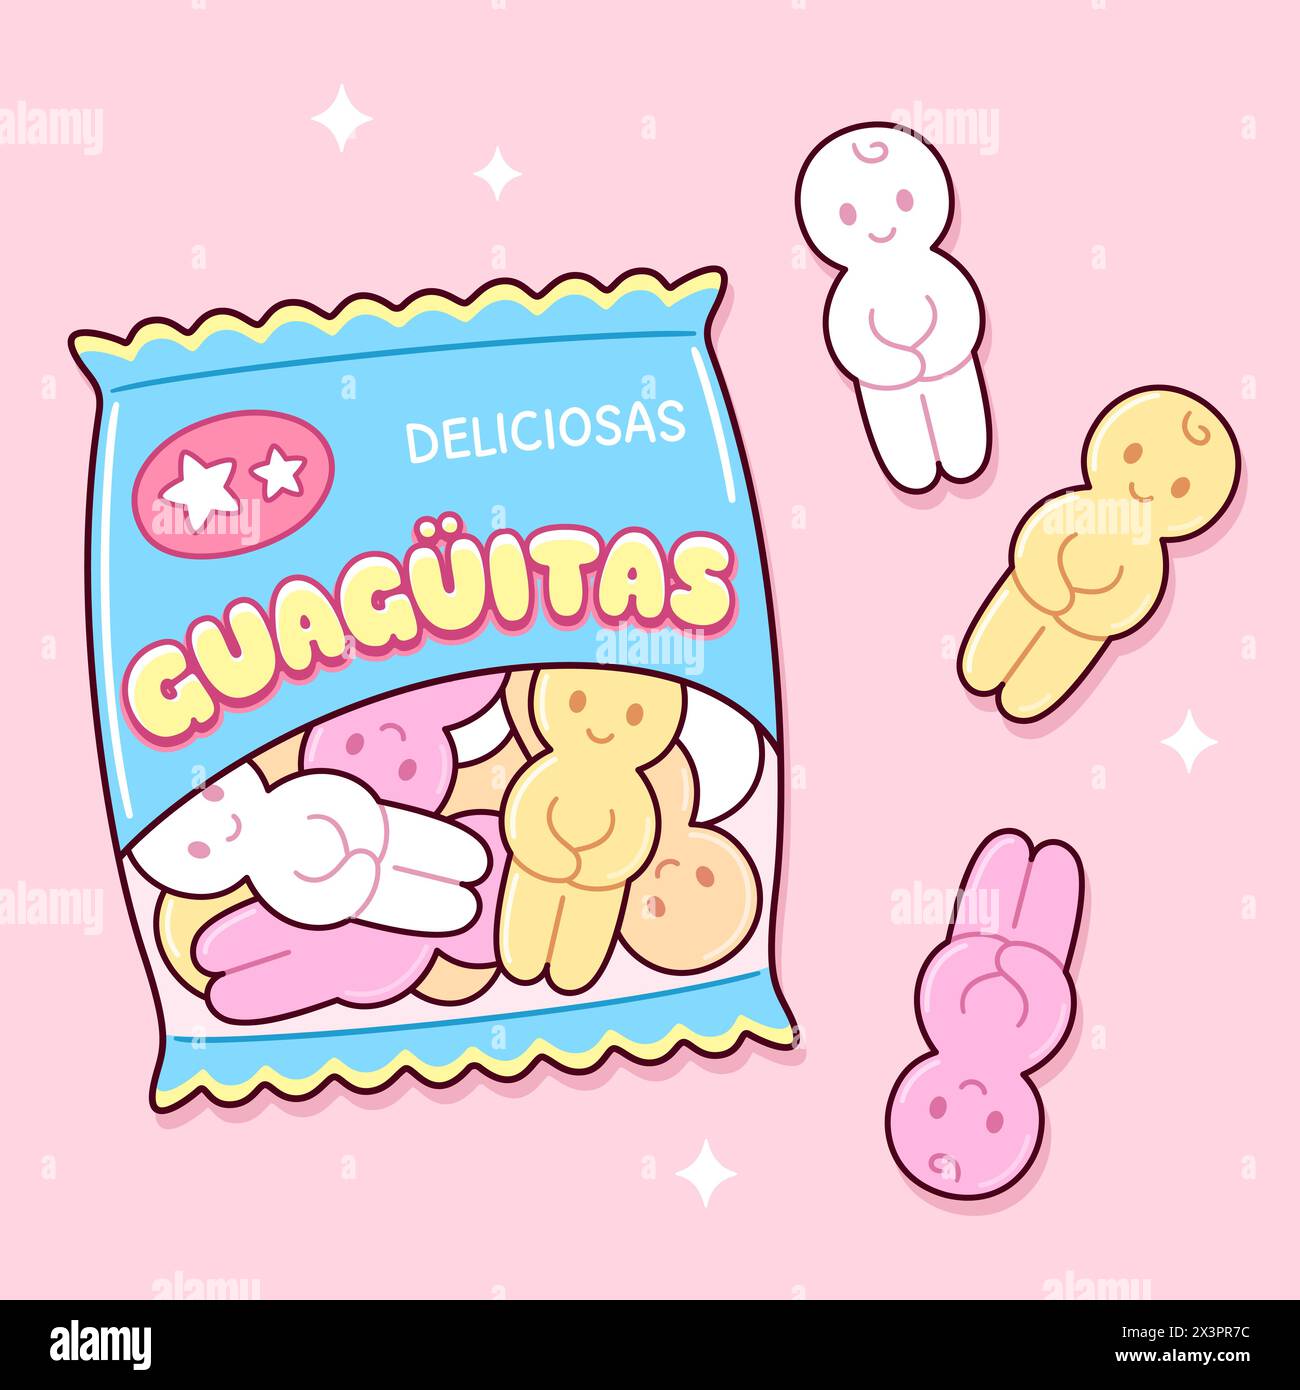 Guaguitas, traditionelles chilenisches Marshmallow in Babyform. Süße Cartoon-Tüte mit Süßigkeiten. Kawaii-Vektor-ClipArt-Illustration. Stock Vektor